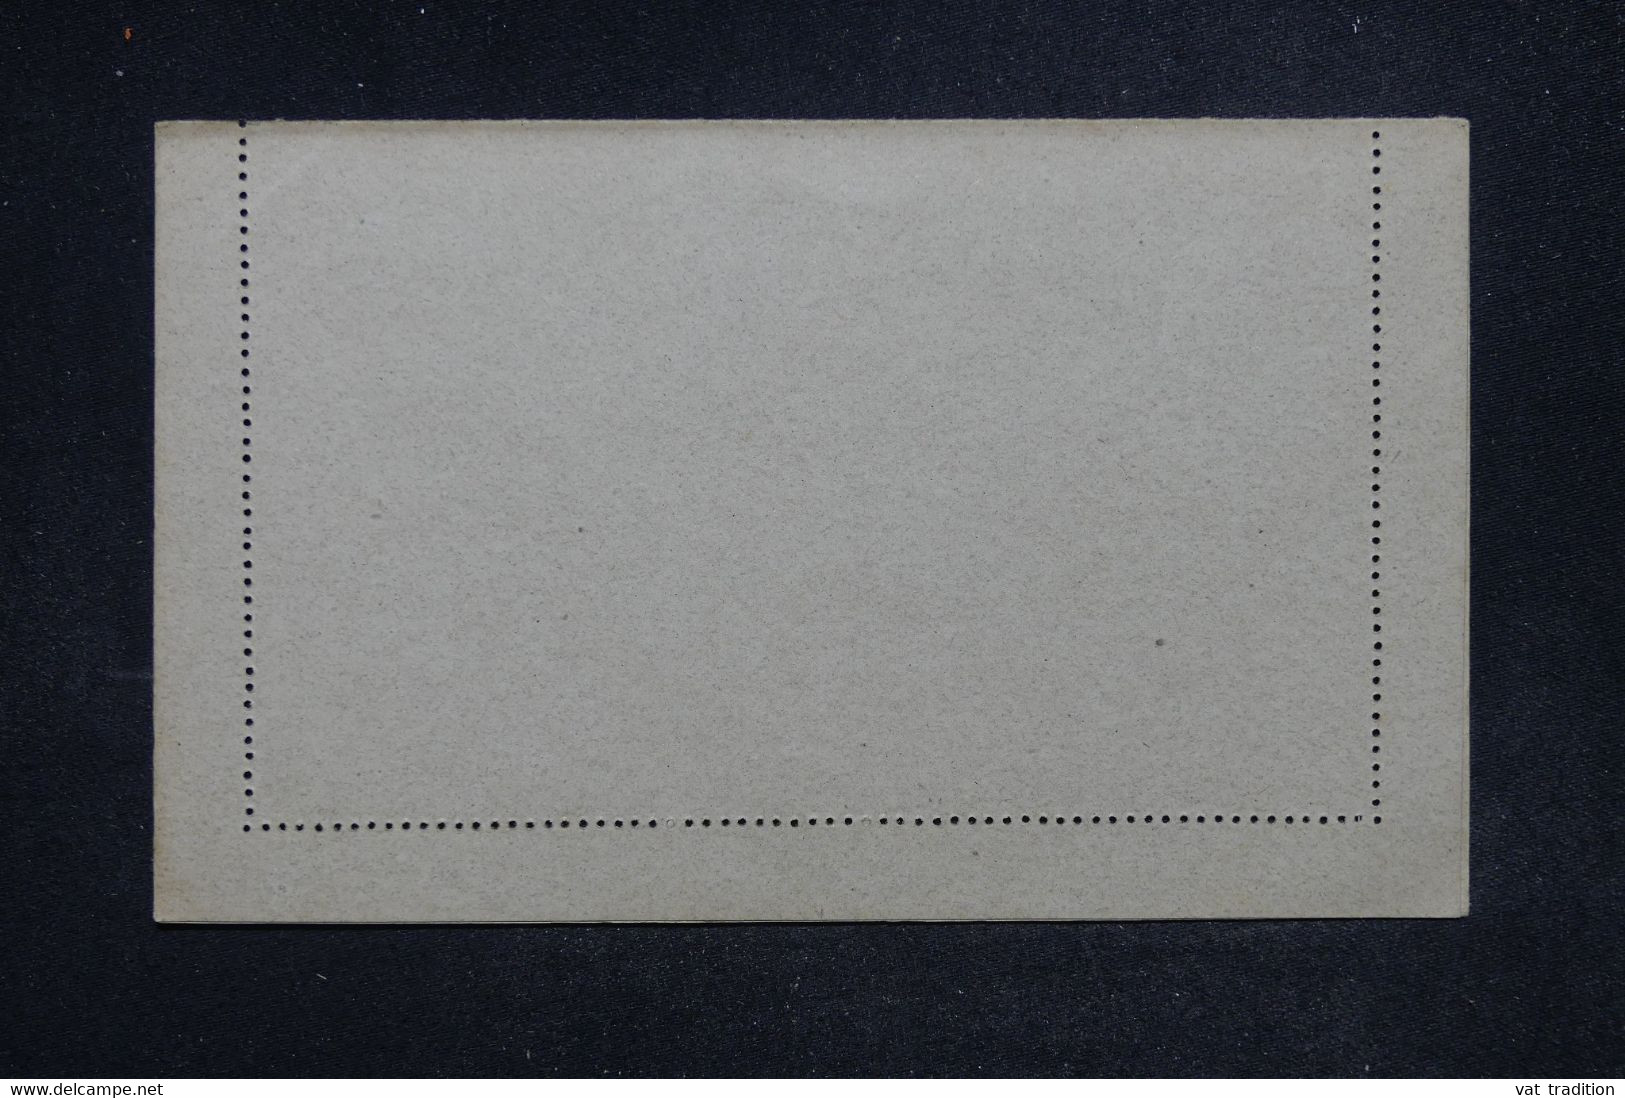 NOSSI BE - Entier Postal Type Groupe (carte Lettre Collée ) ,non Circulé - L 122077 - Storia Postale